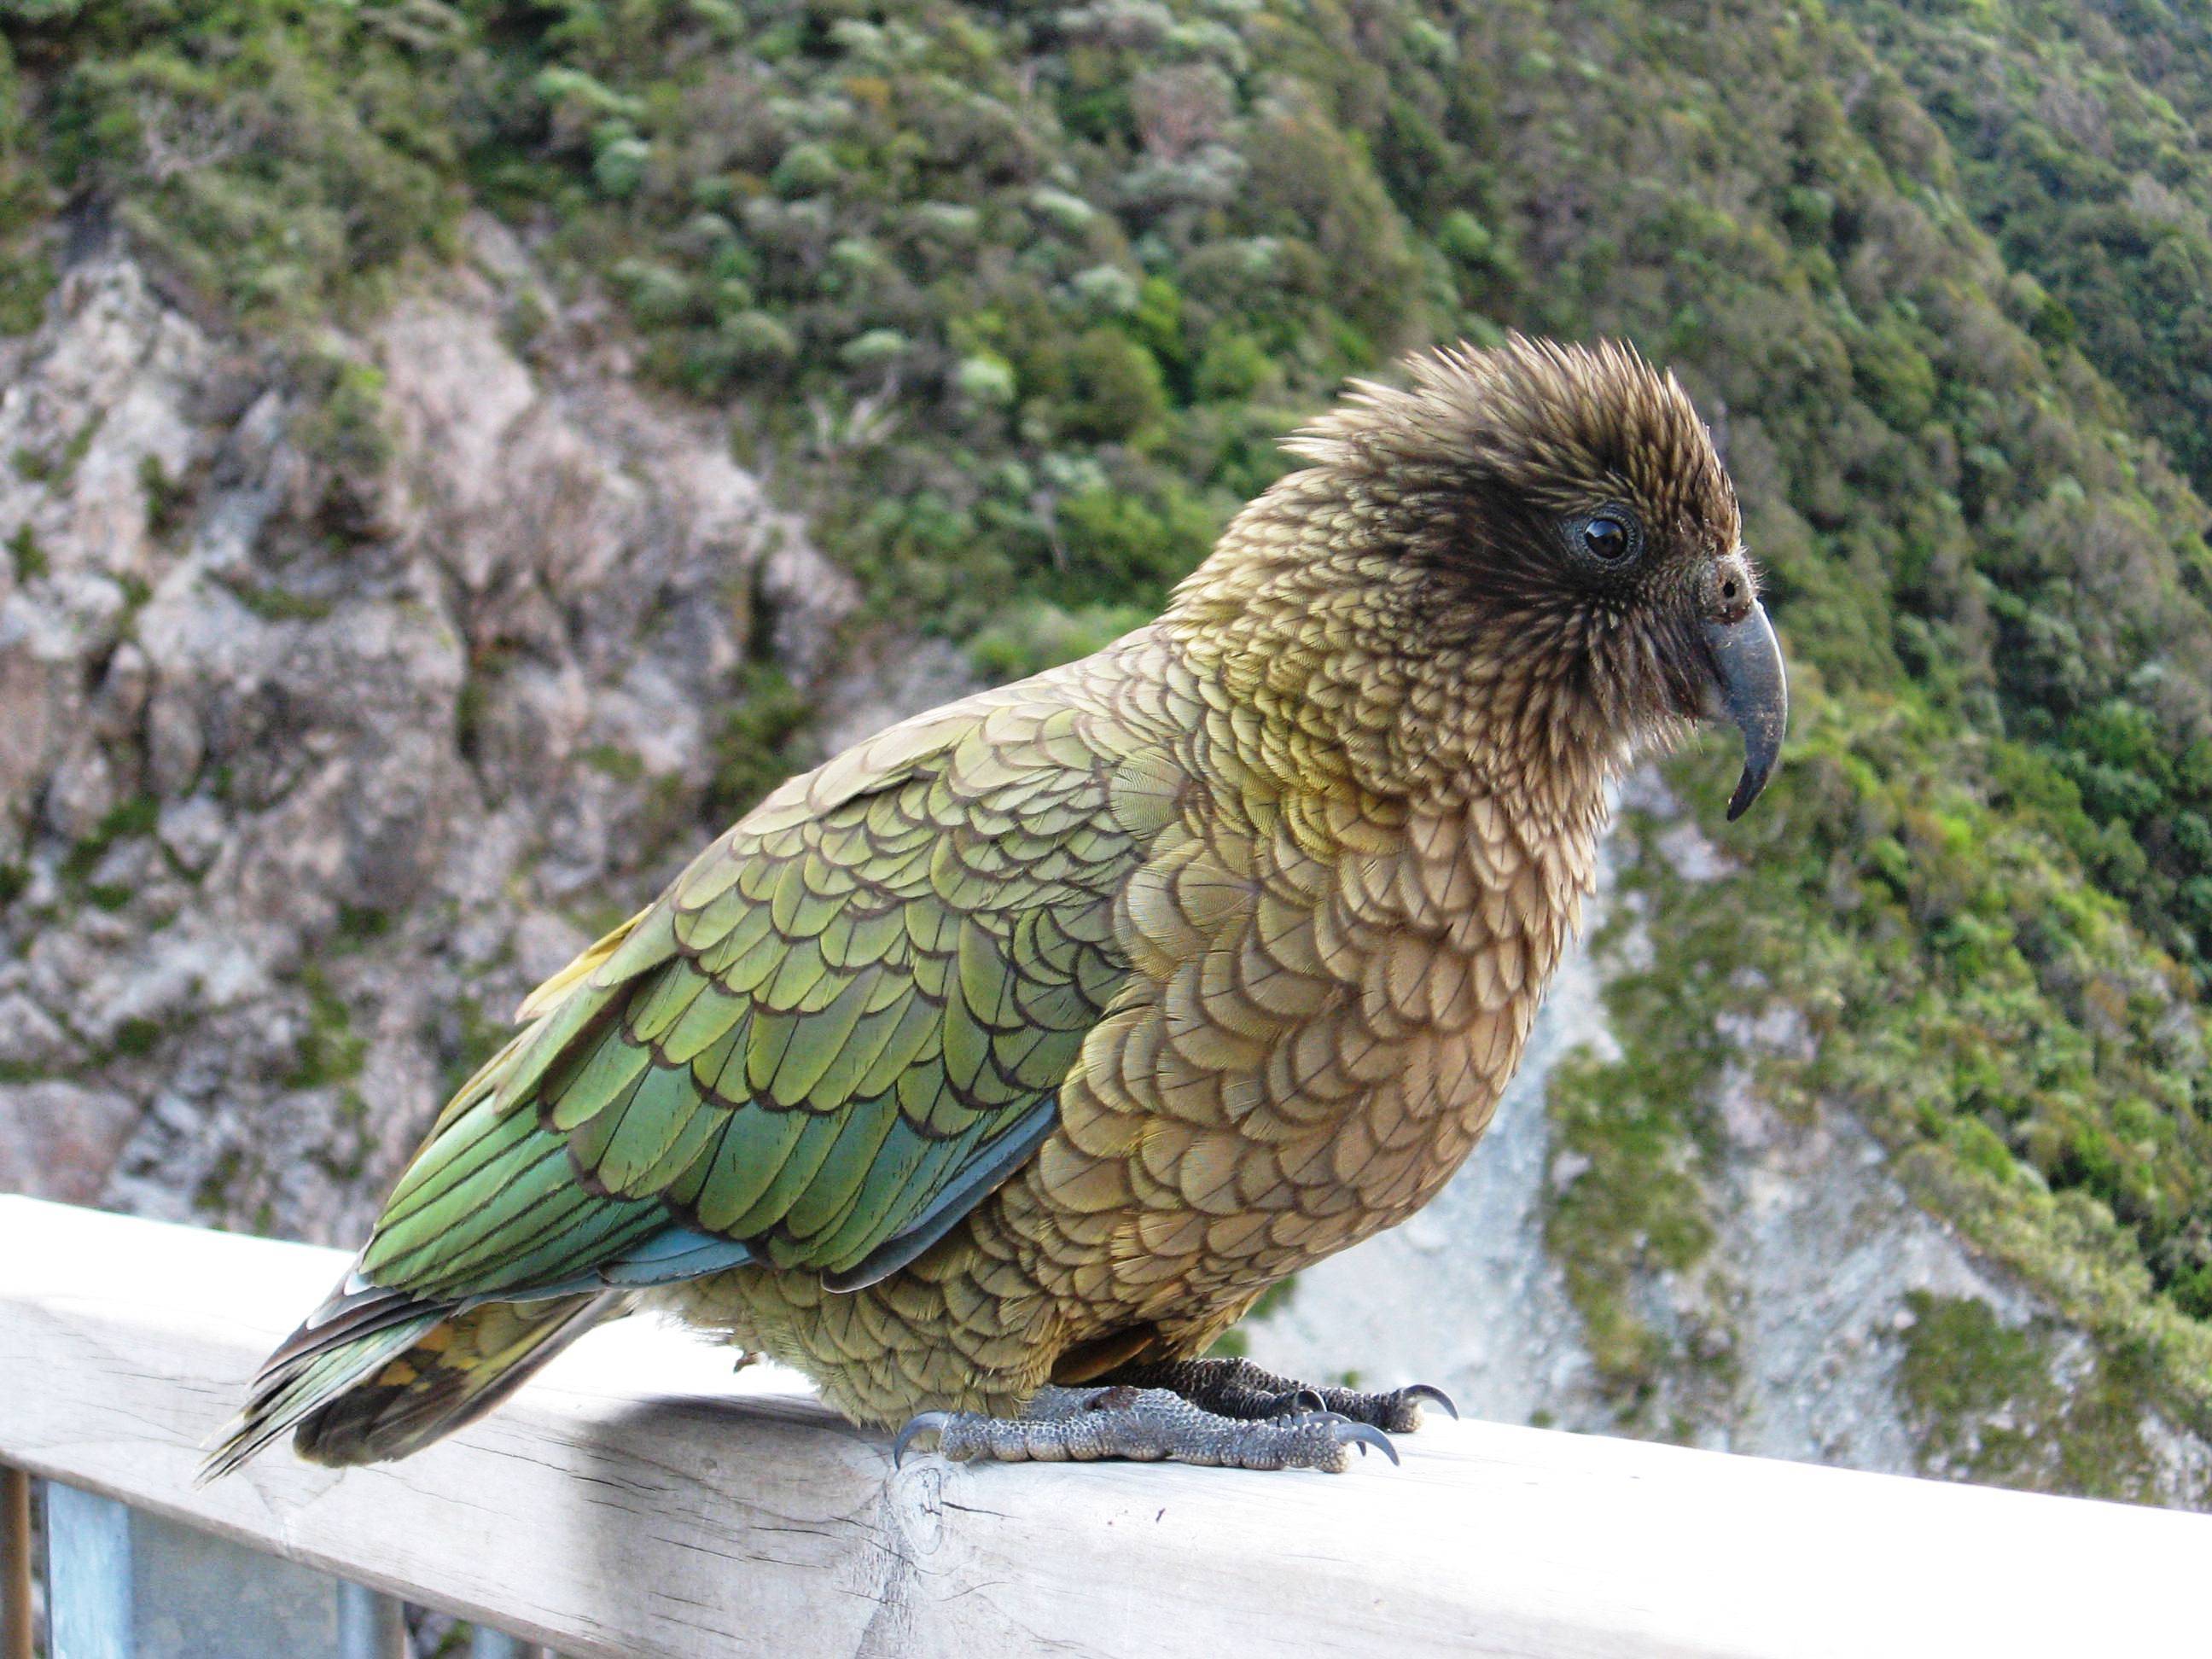 Попугай хищник. Попугай Кеа новая Зеландия. Кеа и какапо. Хищный попугай Кеа.